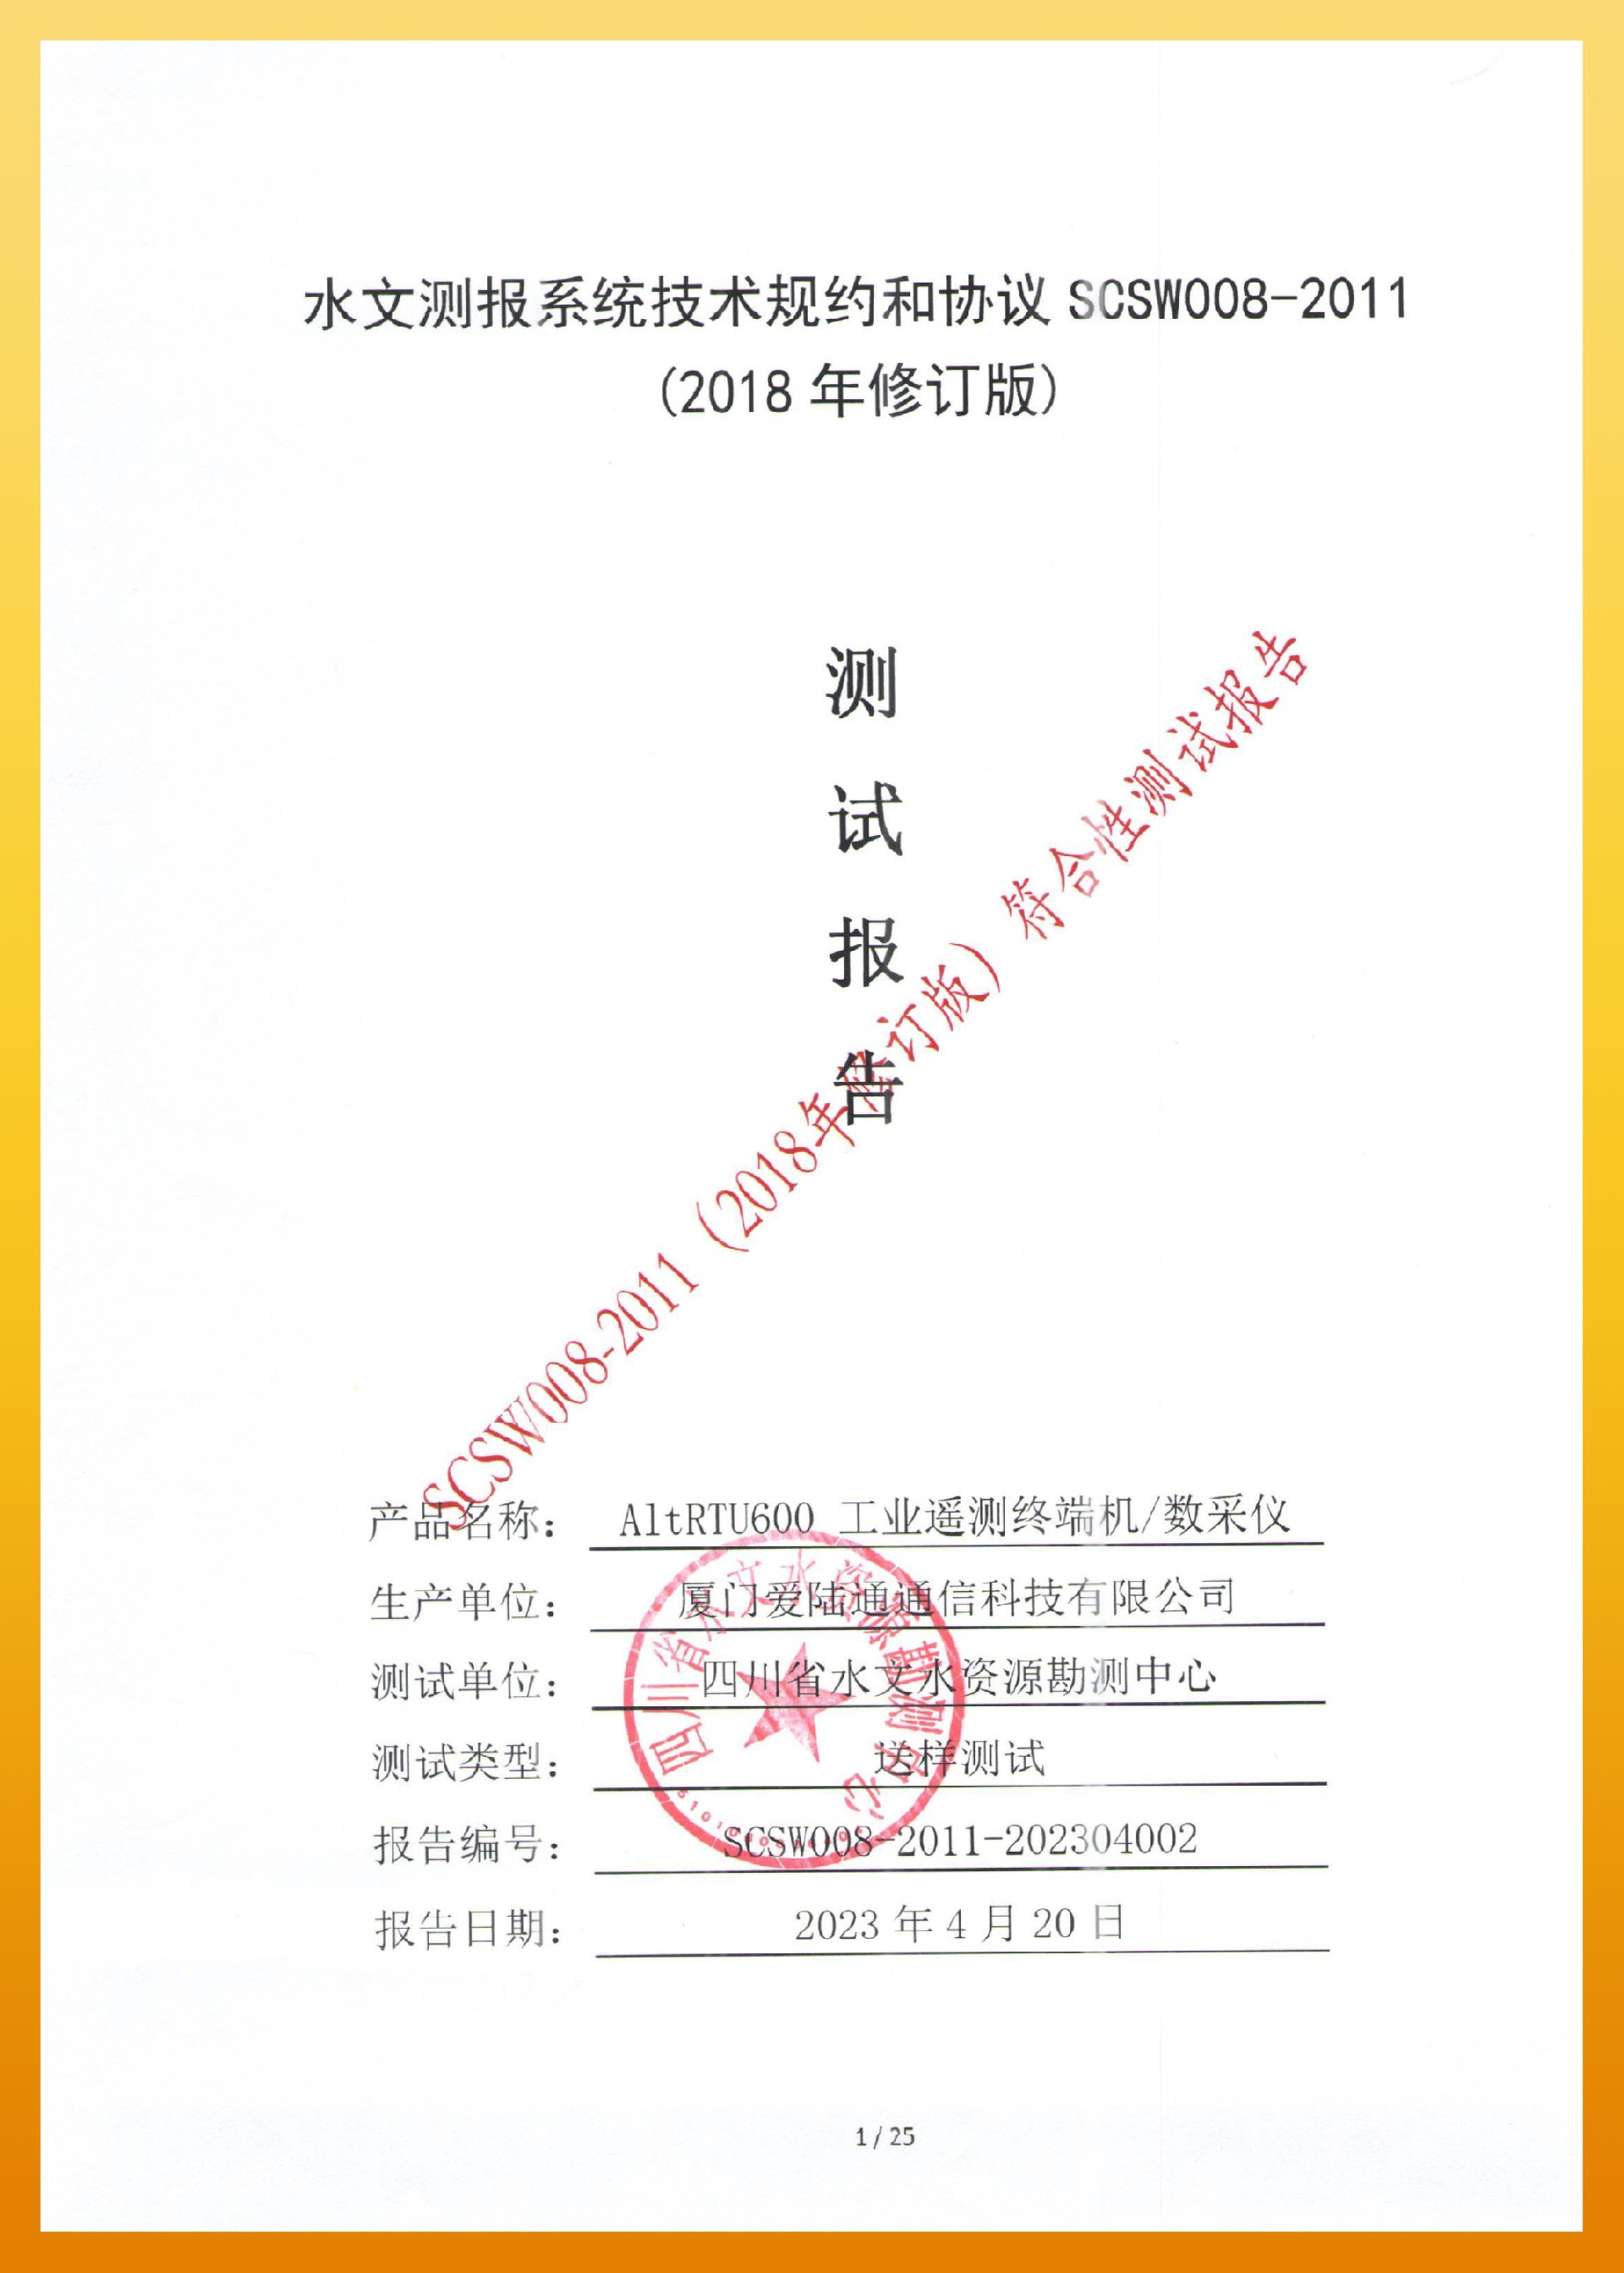 pc28官方-四川水文测报系统技术规约和协议 SCSW008-2011-1.jpg